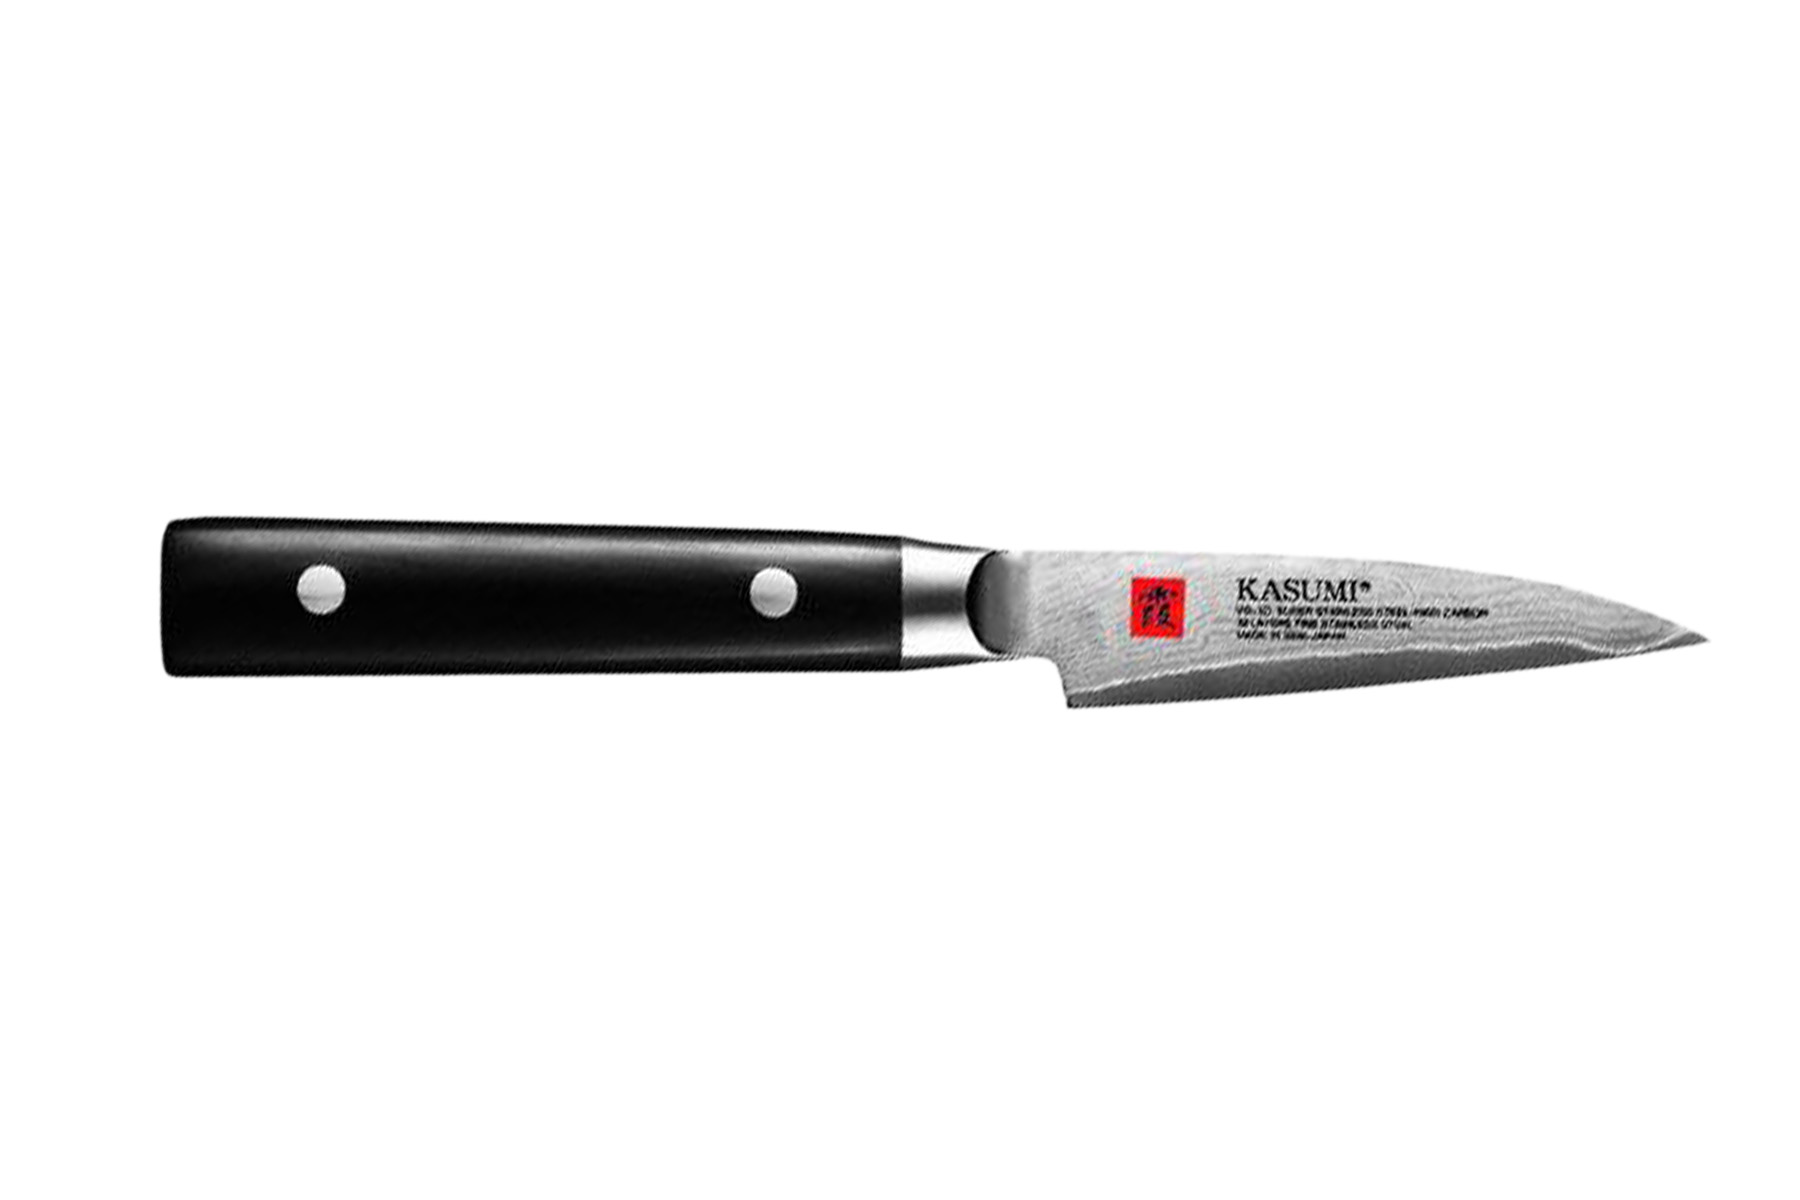 Couteau de cuisine japonais Kasumi Damas 8 cm office